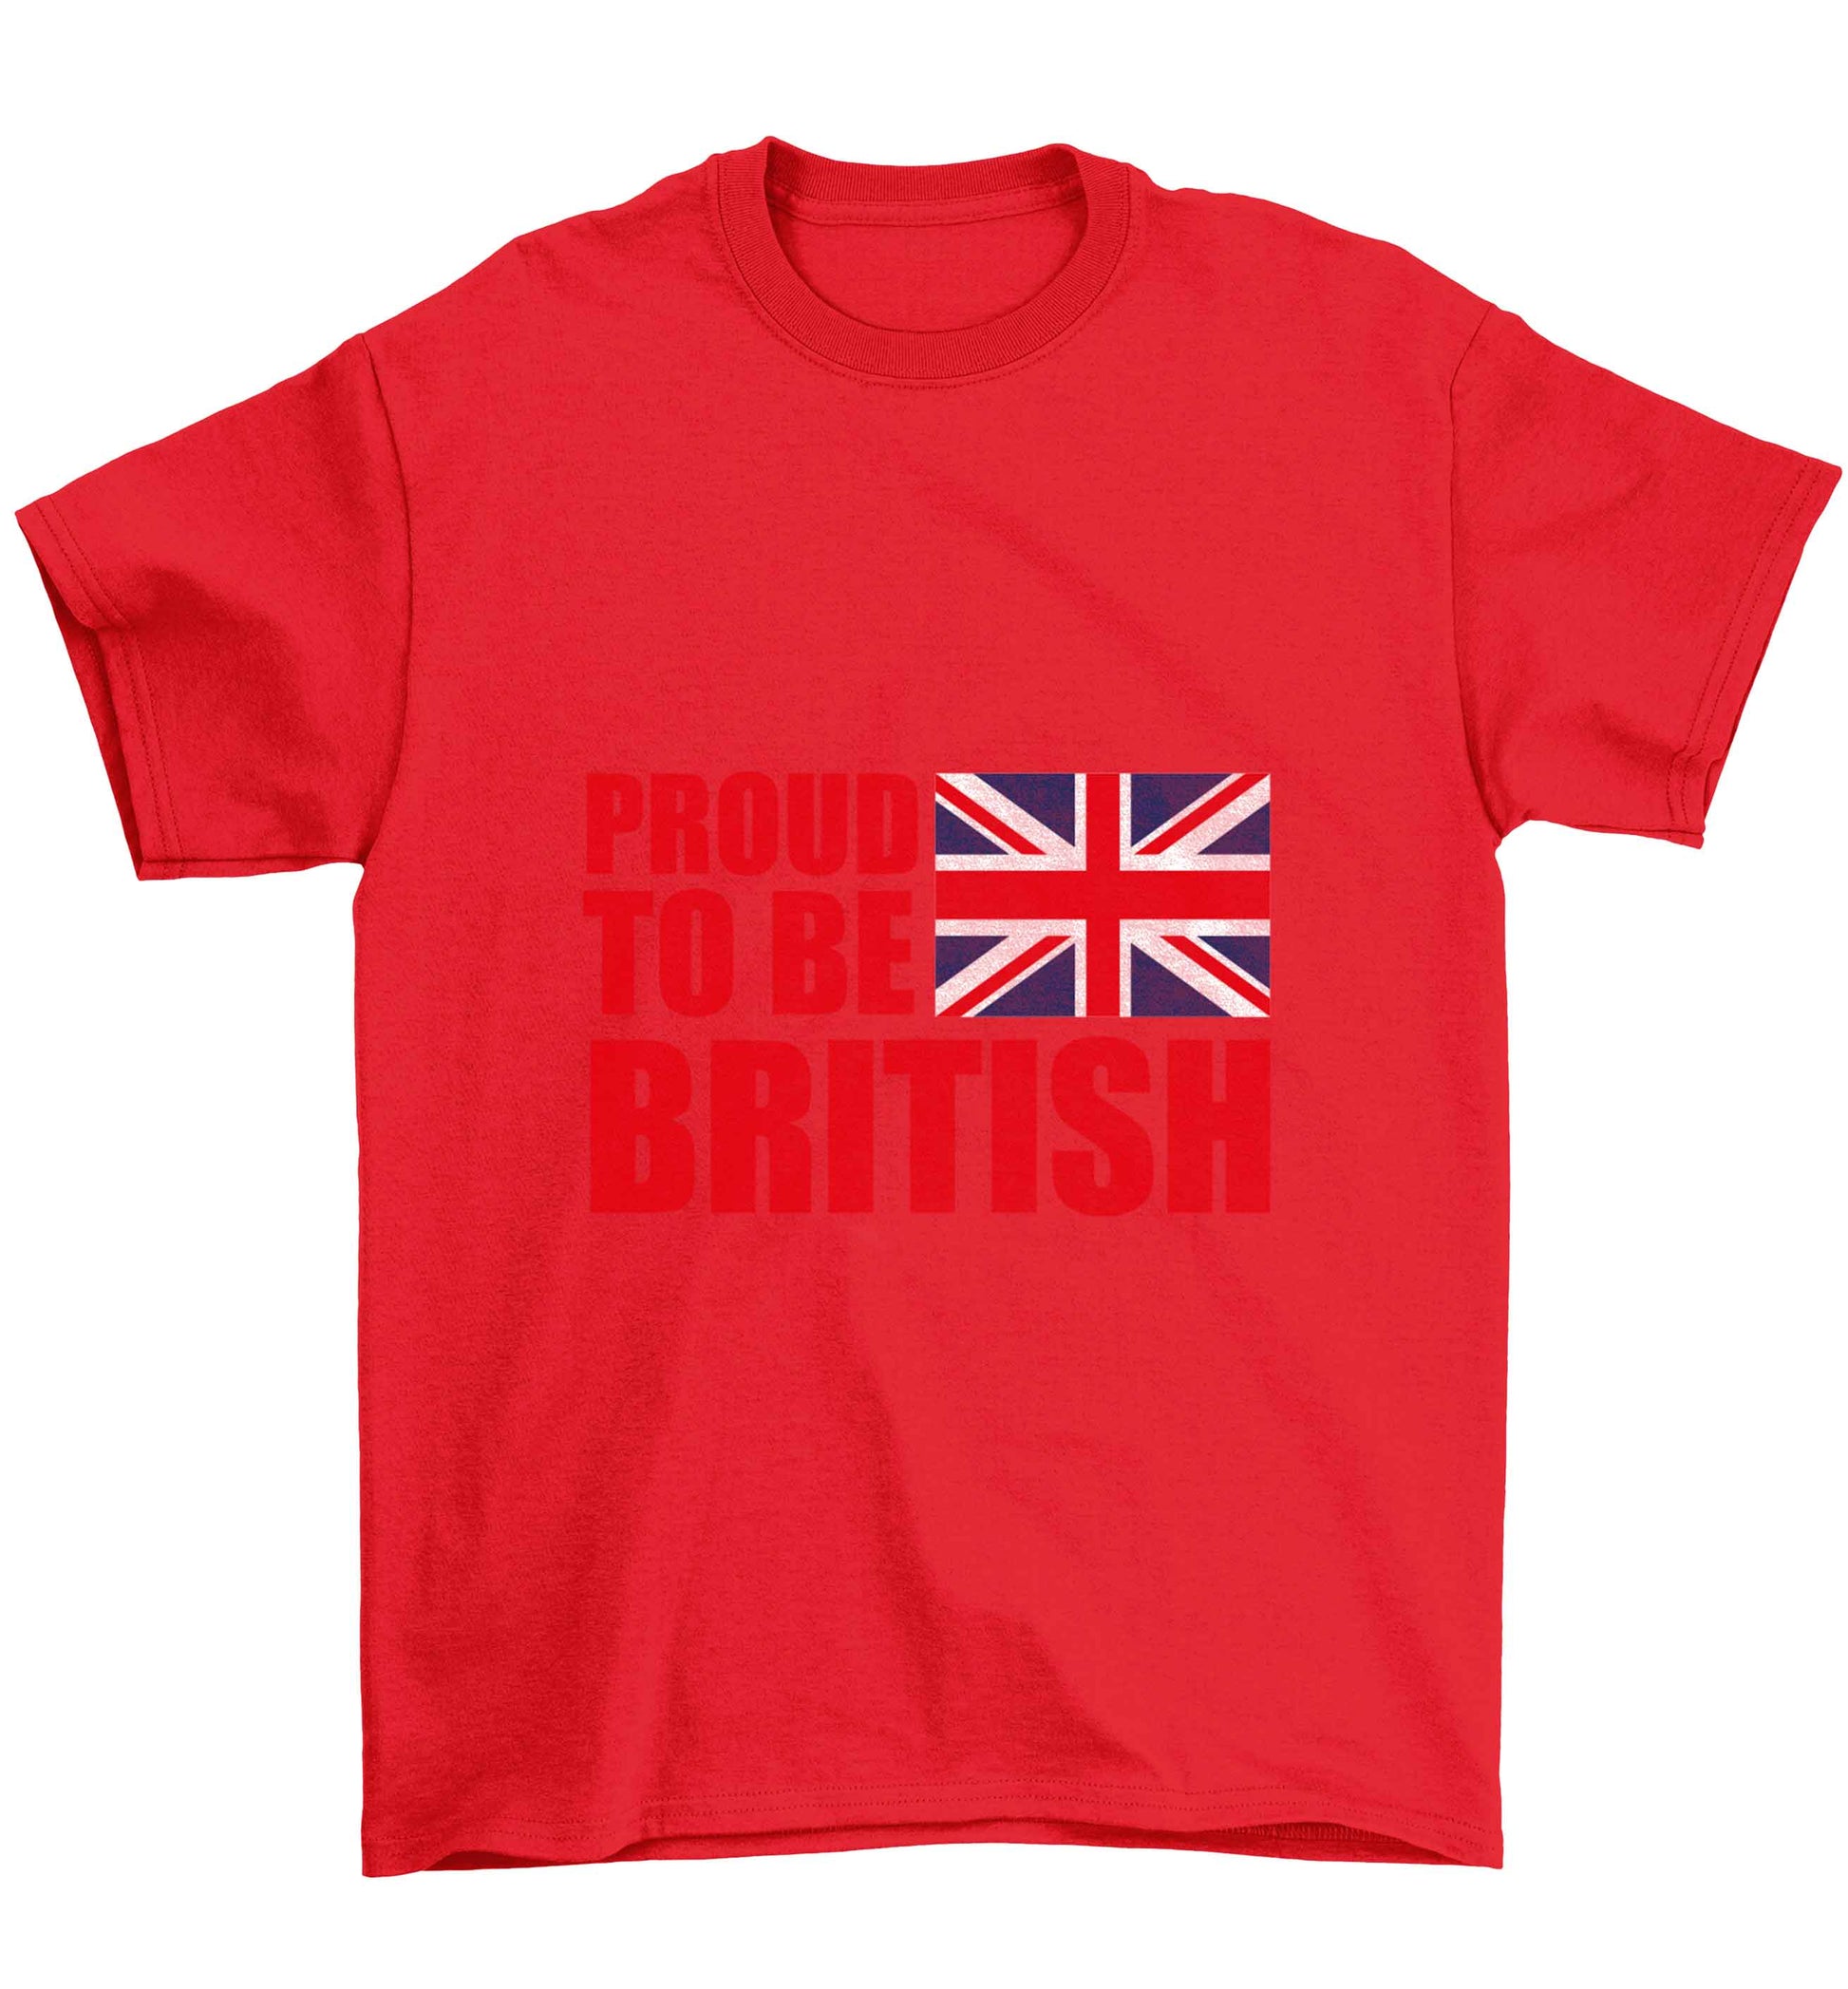 Proud to be British Children's red Tshirt 12-13 Years